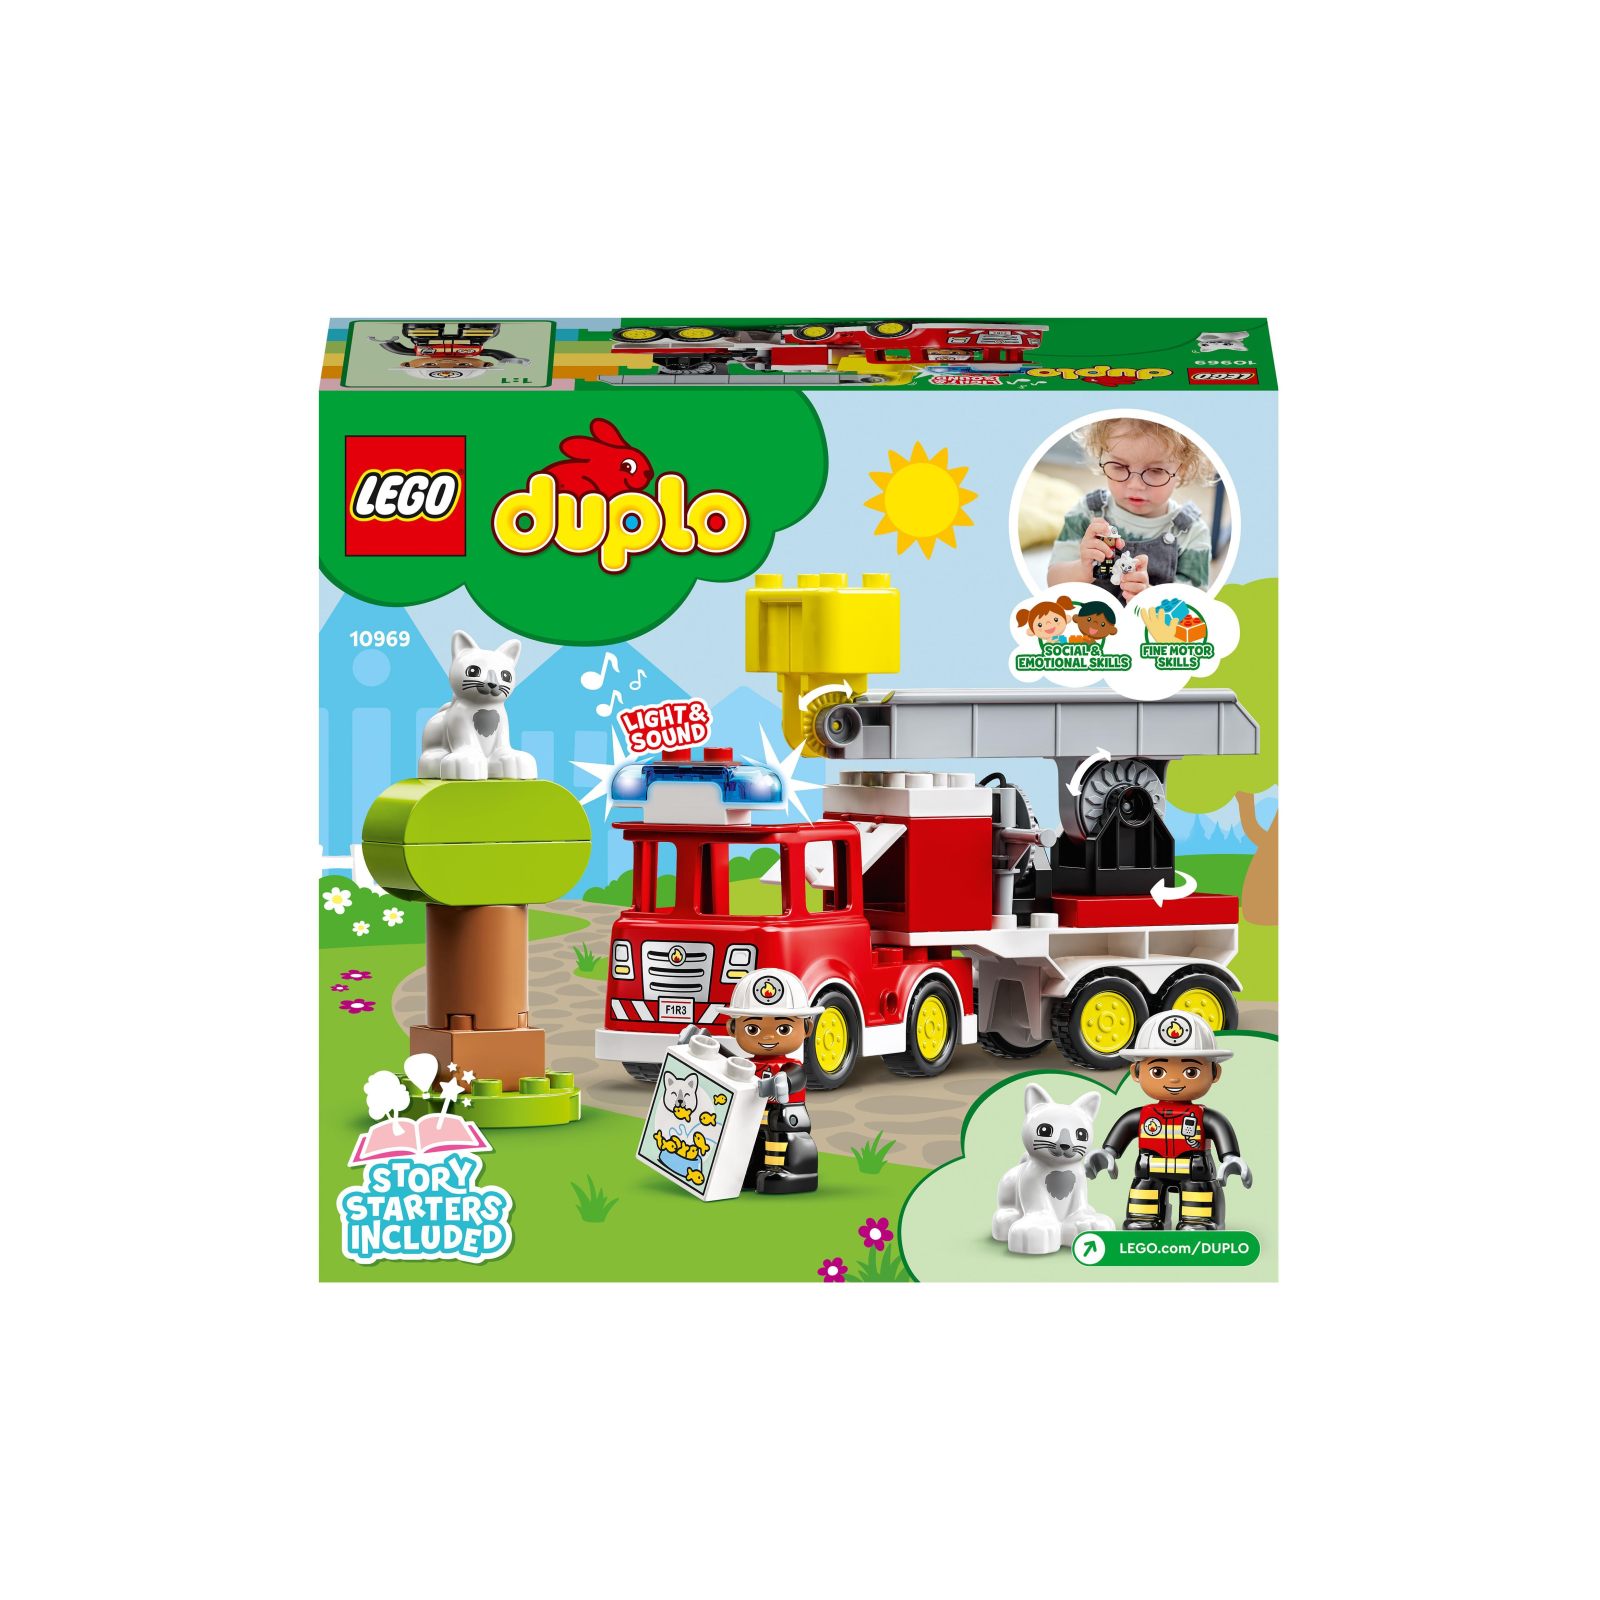 Lego duplo town autopompa, camion giocattolo con luci e sirena, figure pompiere e gatto, giochi educativi per bambini, 10969 - LEGO DUPLO